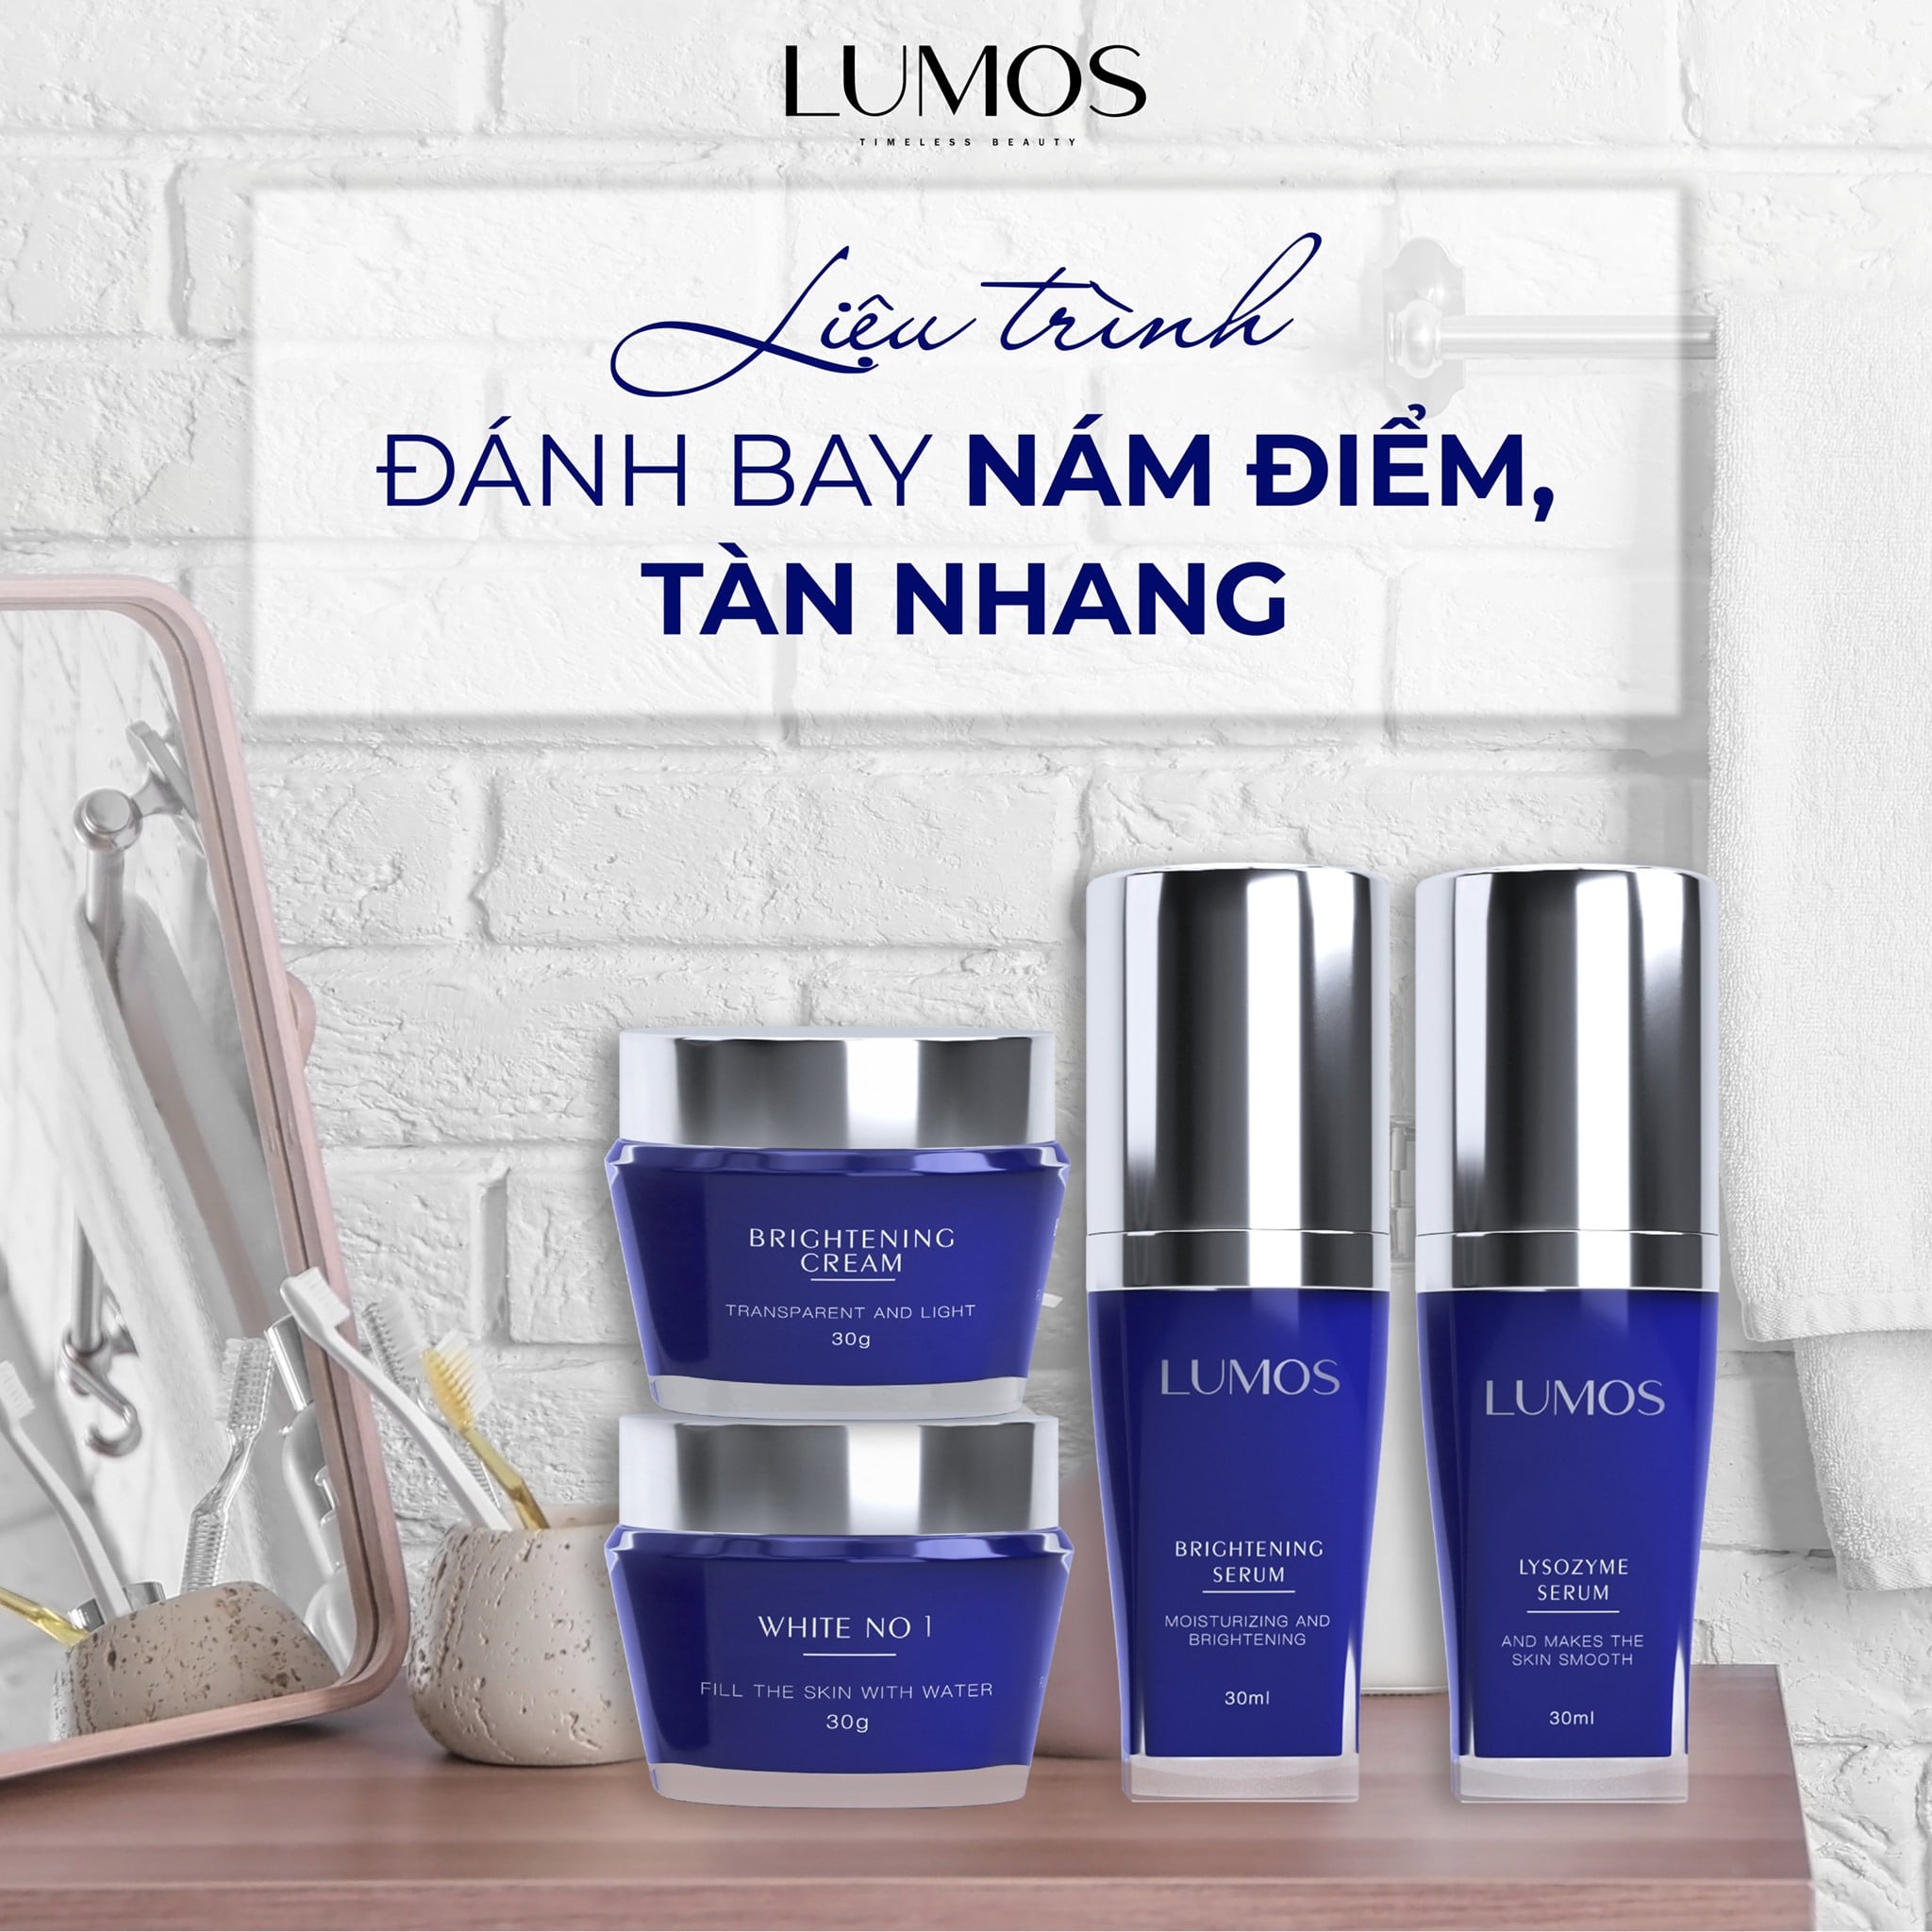 Lumos Beauty L&M 2 là một sản phẩm điều trị da độc quyền